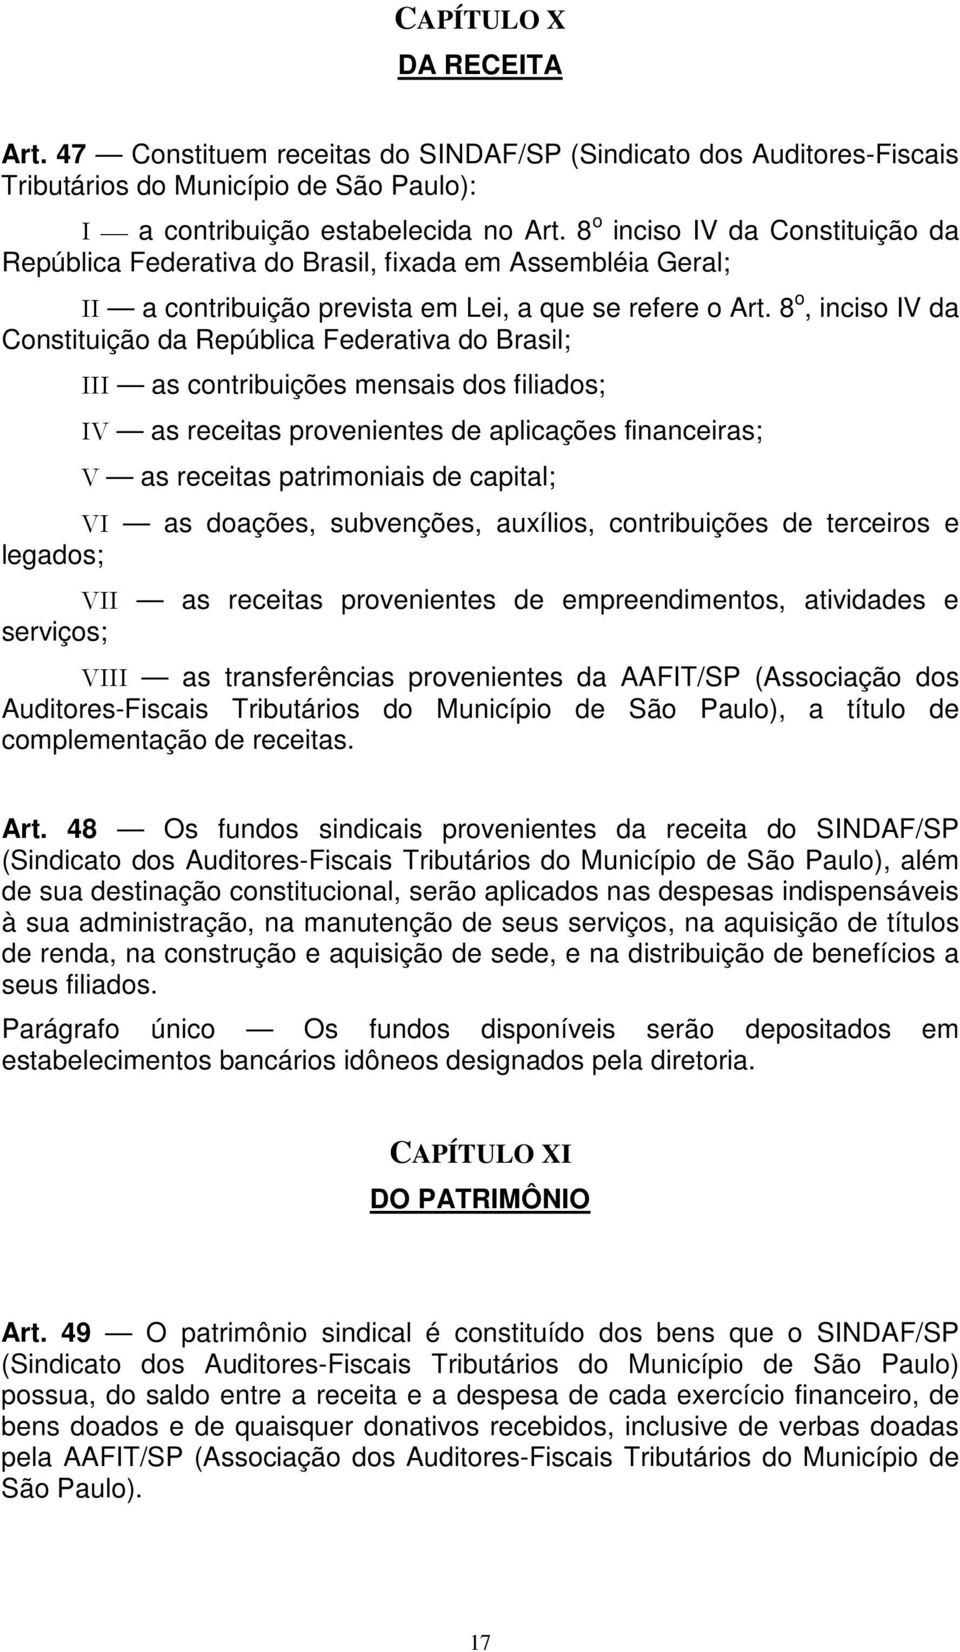 8 o, inciso IV da Constituição da República Federativa do Brasil; III as contribuições mensais dos filiados; IV as receitas provenientes de aplicações financeiras; V as receitas patrimoniais de